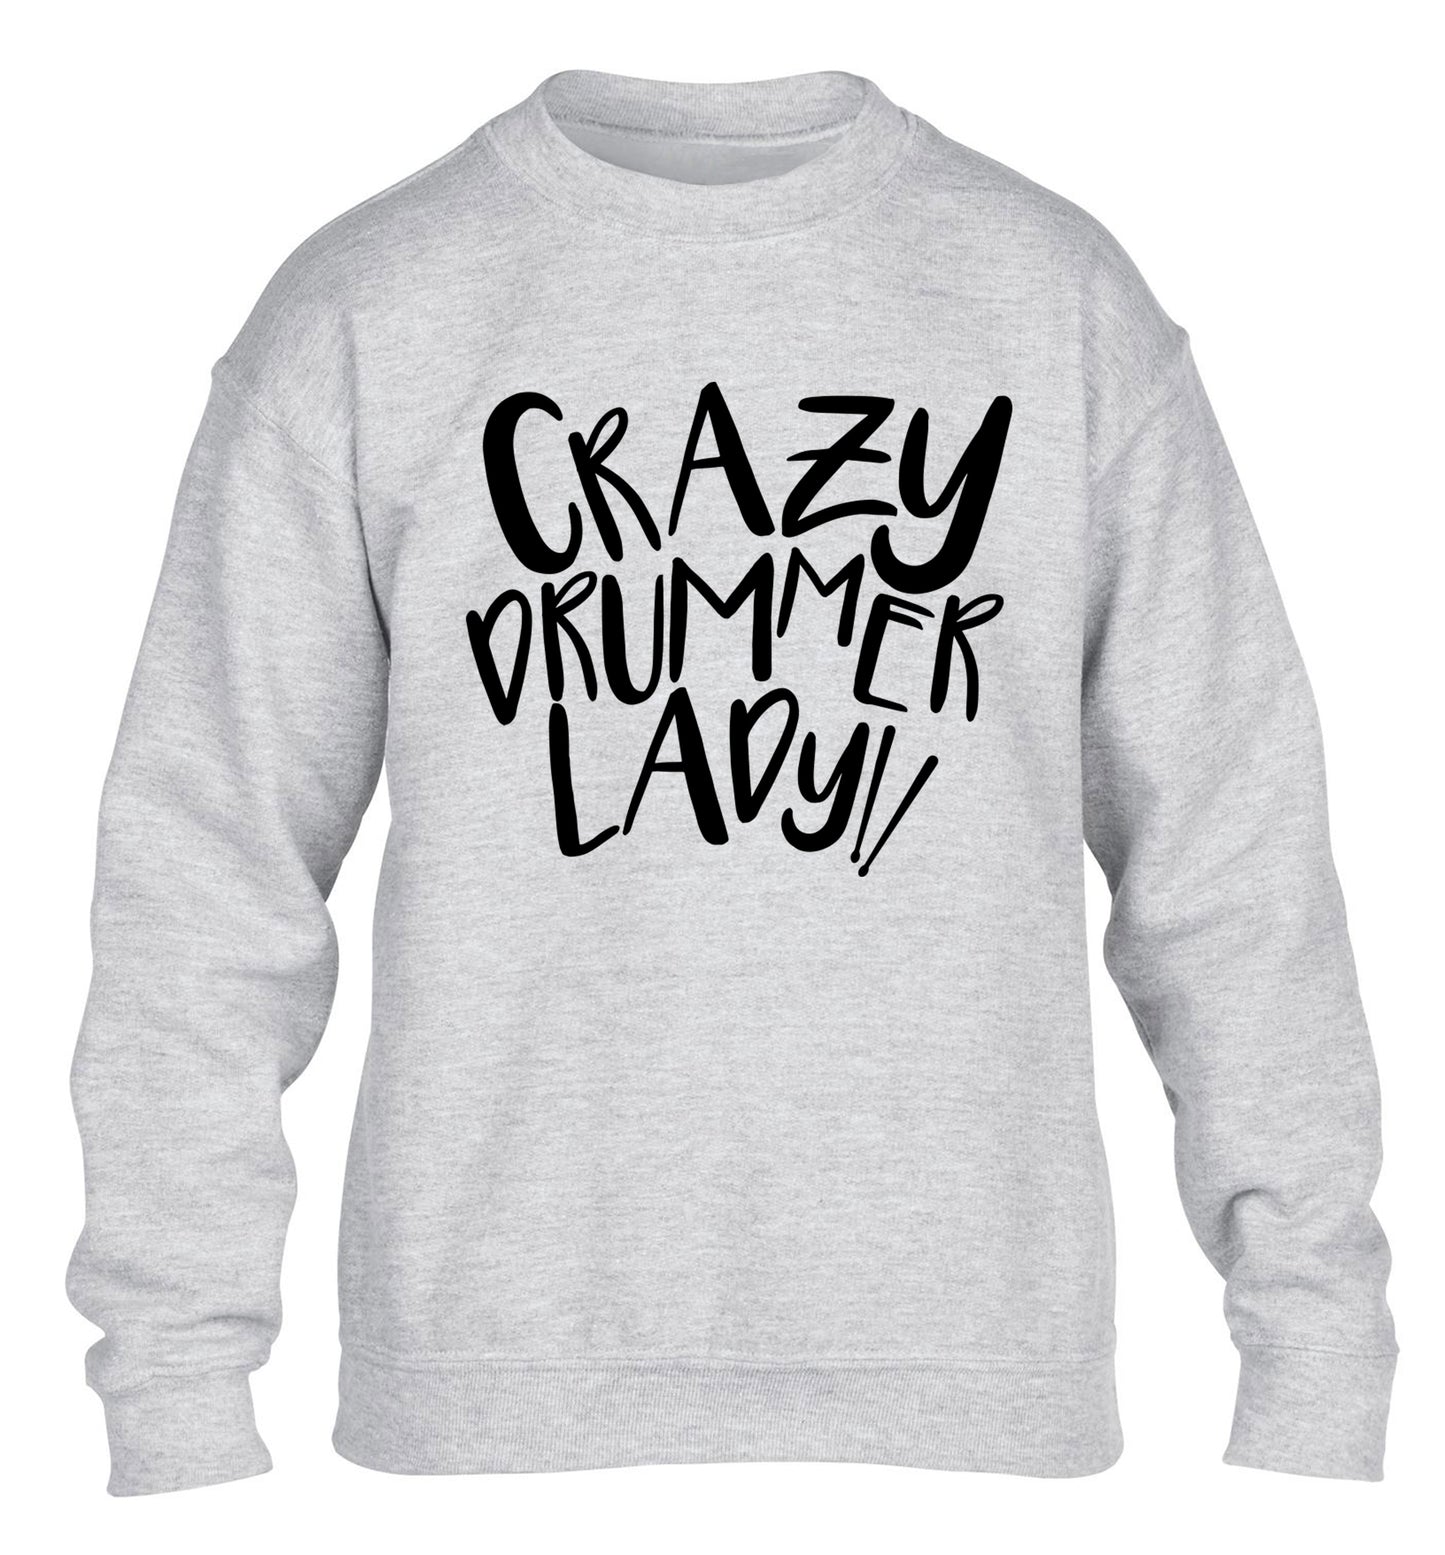 Crazy drummer lady children's grey sweater 12-14 Years